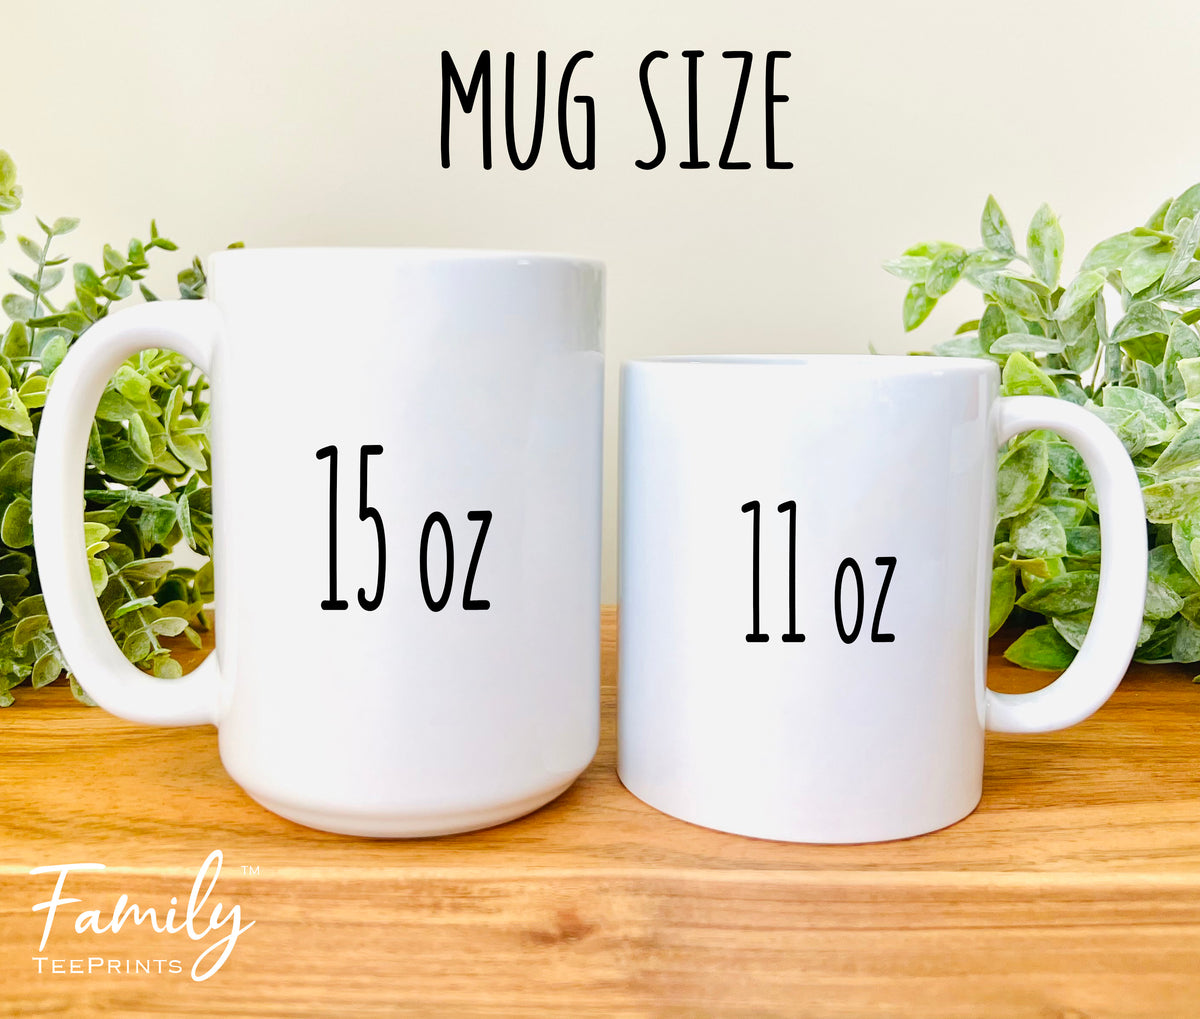 Yoda Best Son - Coffee Mug - Gifts For Son - Son Coffee Mug